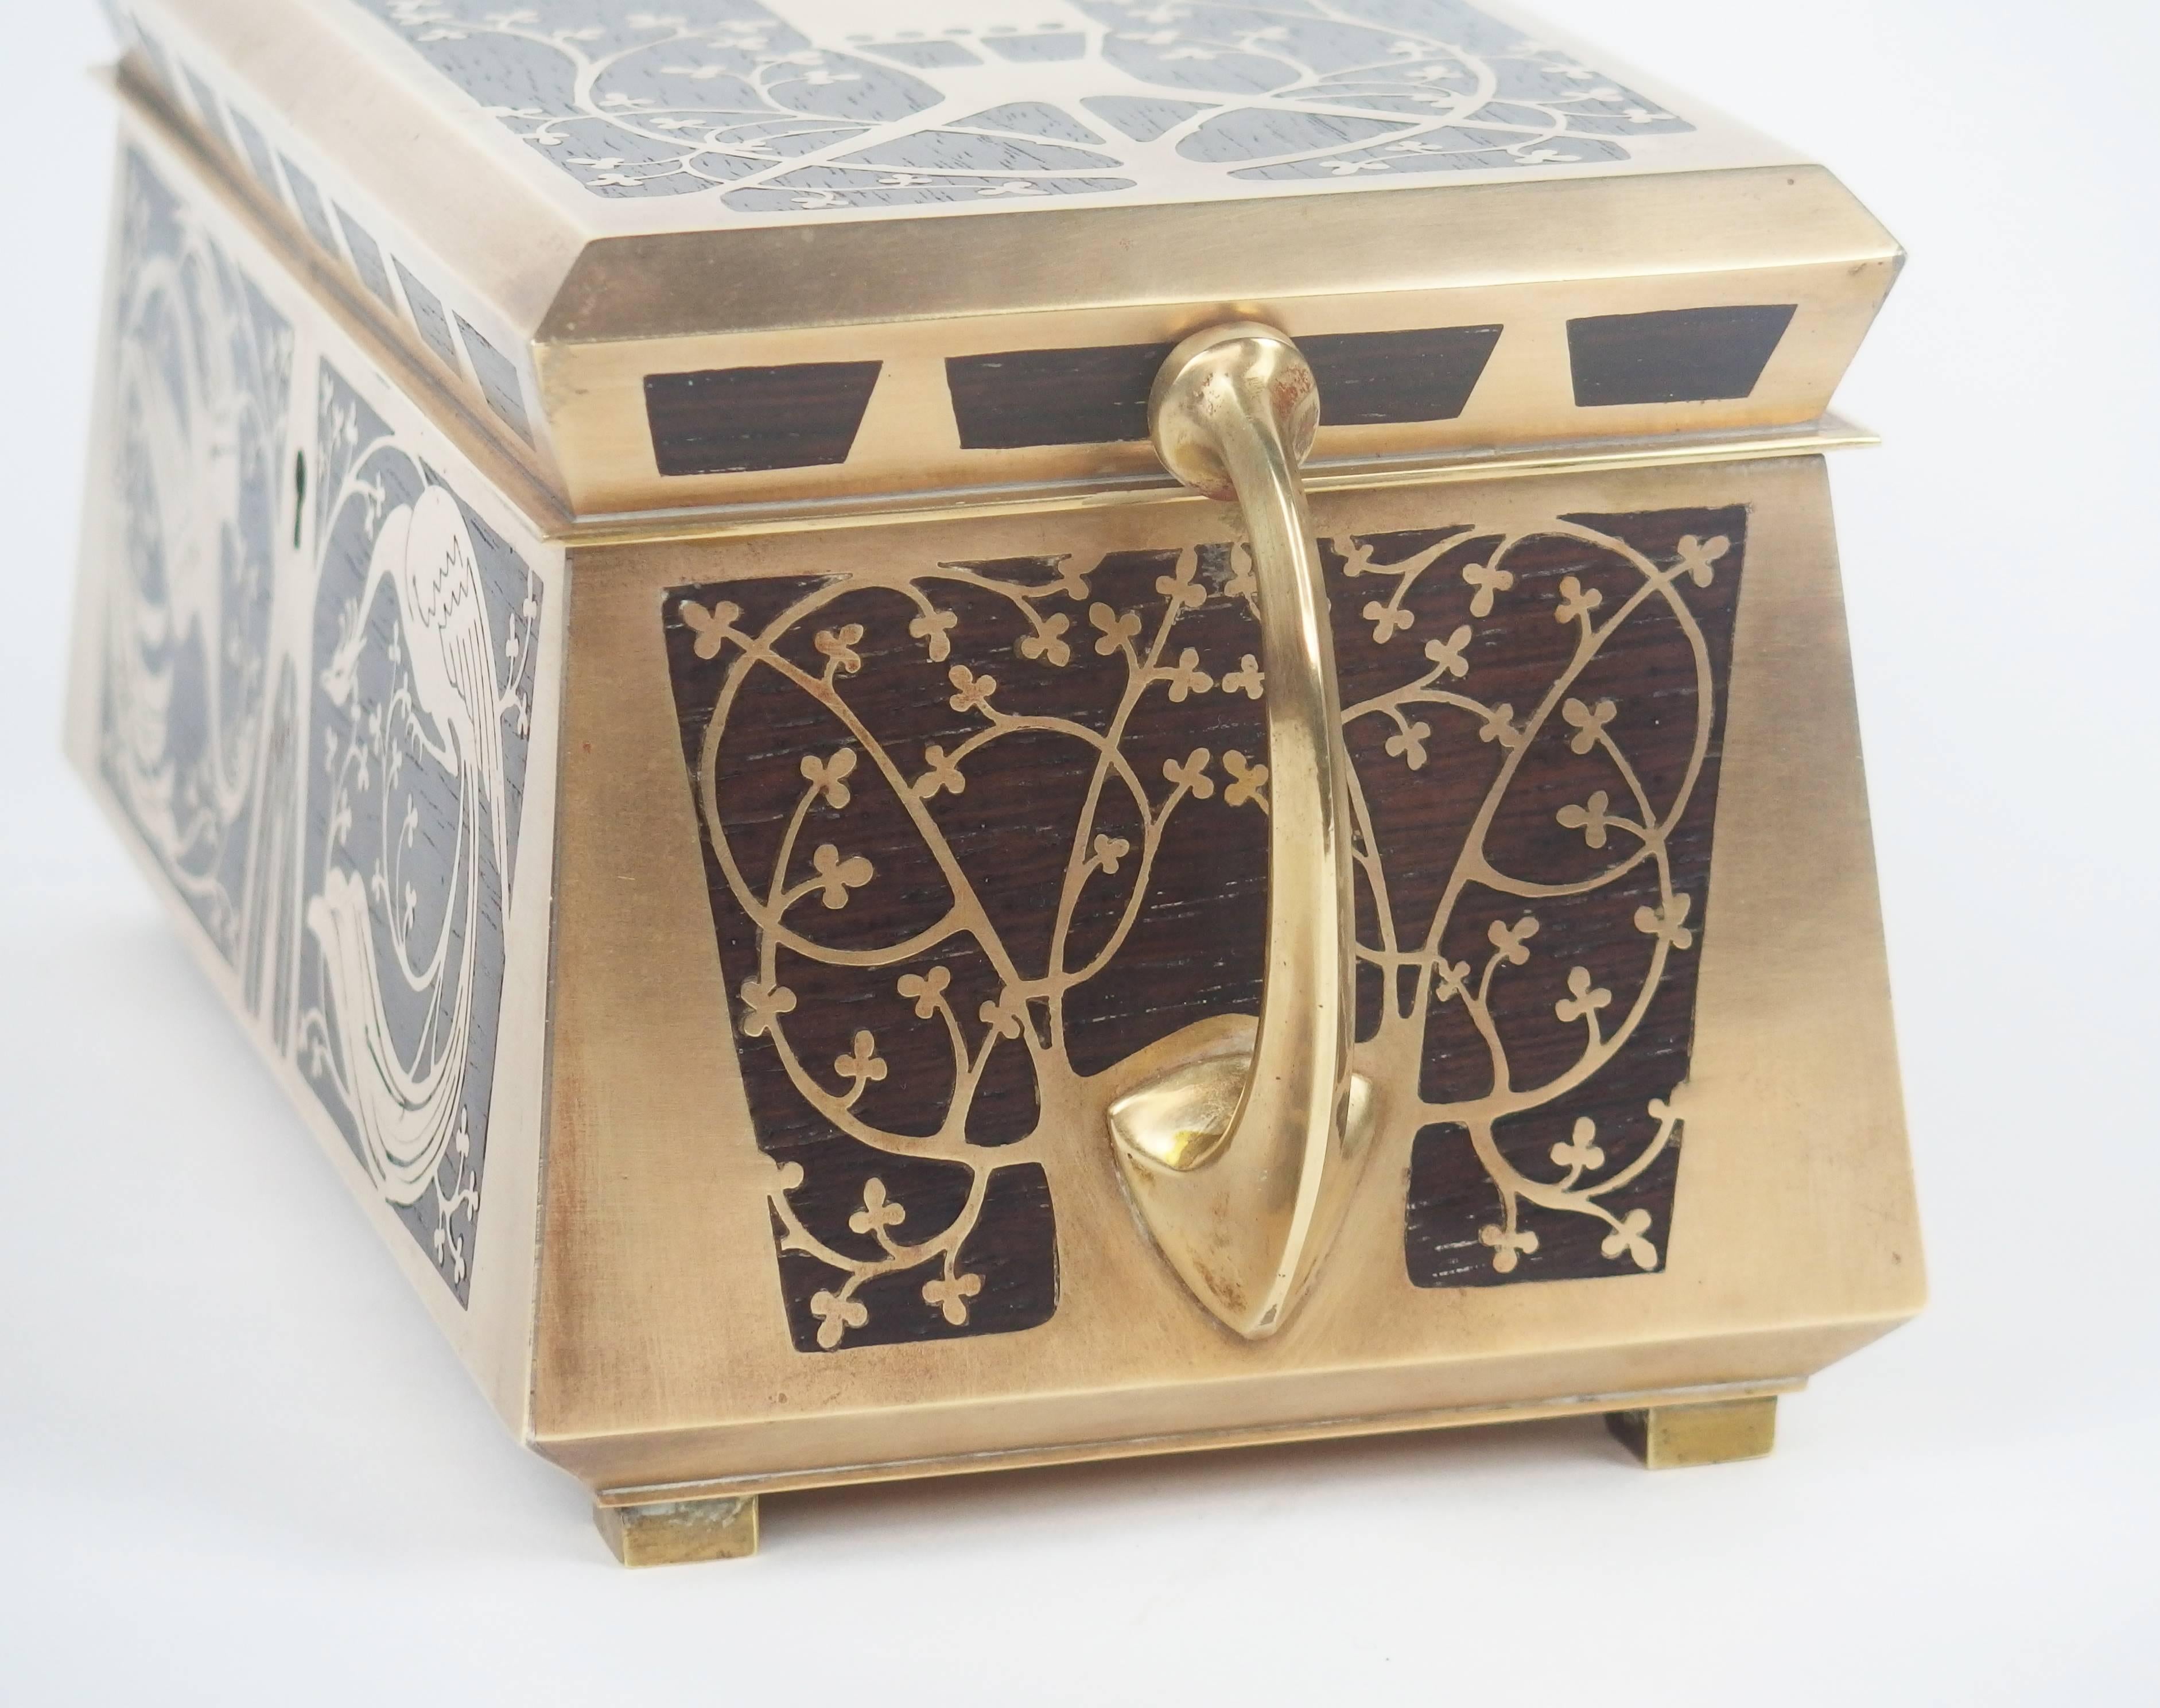 Jugendstil Jewelry Box by Erhard & Sohne 2